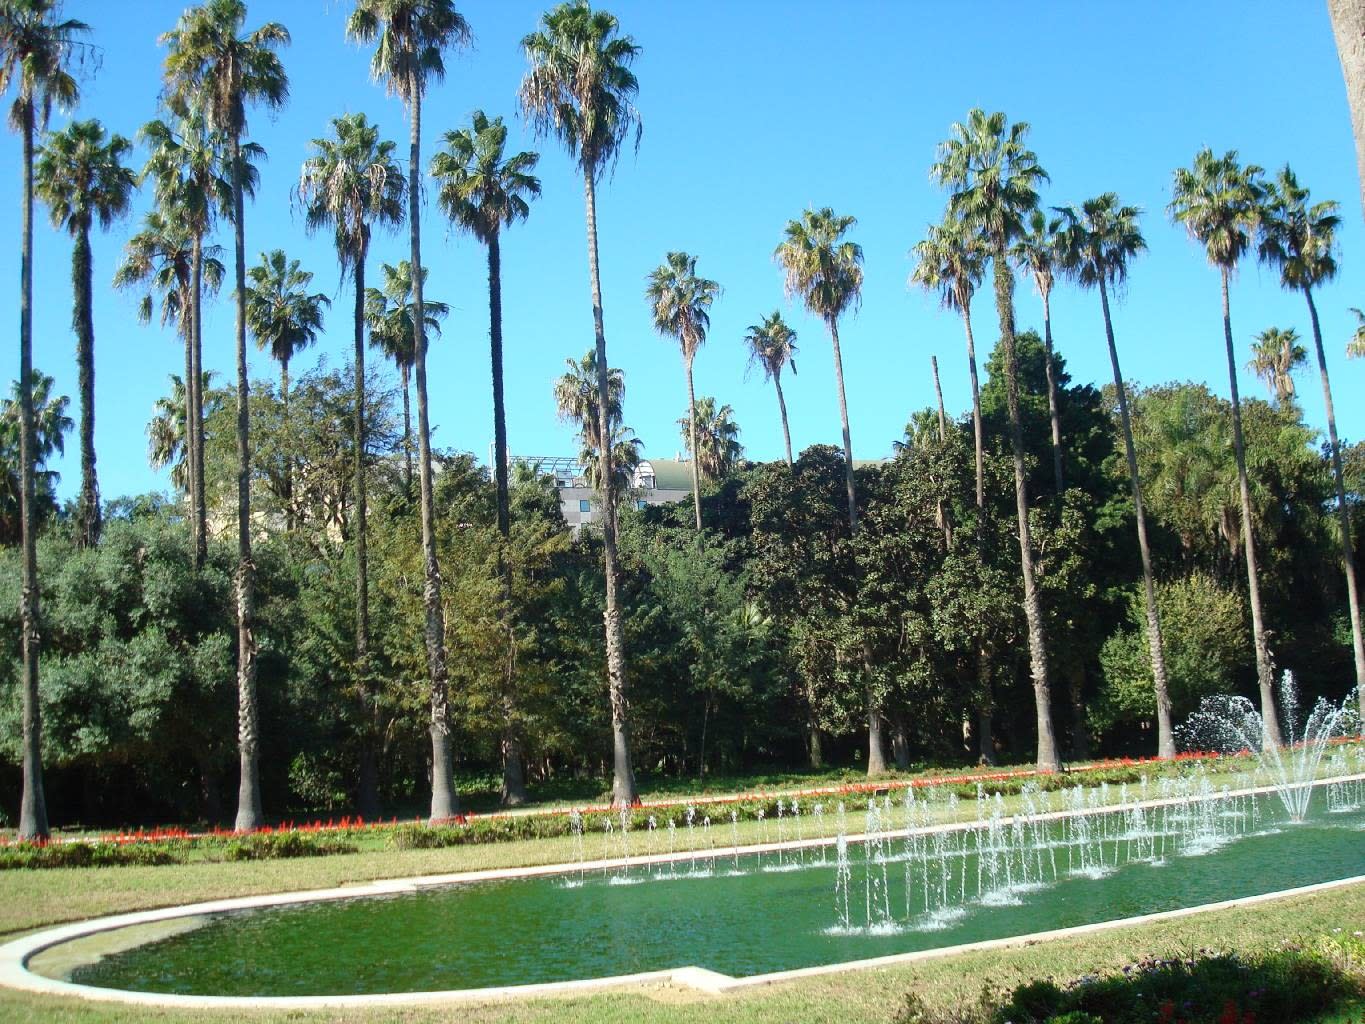 حديقة الحامة بالجزائر .. ثالث حديقة تاريخية في العالم..  Bassin-et-palmiers-jardin-d-essai---alger.73353